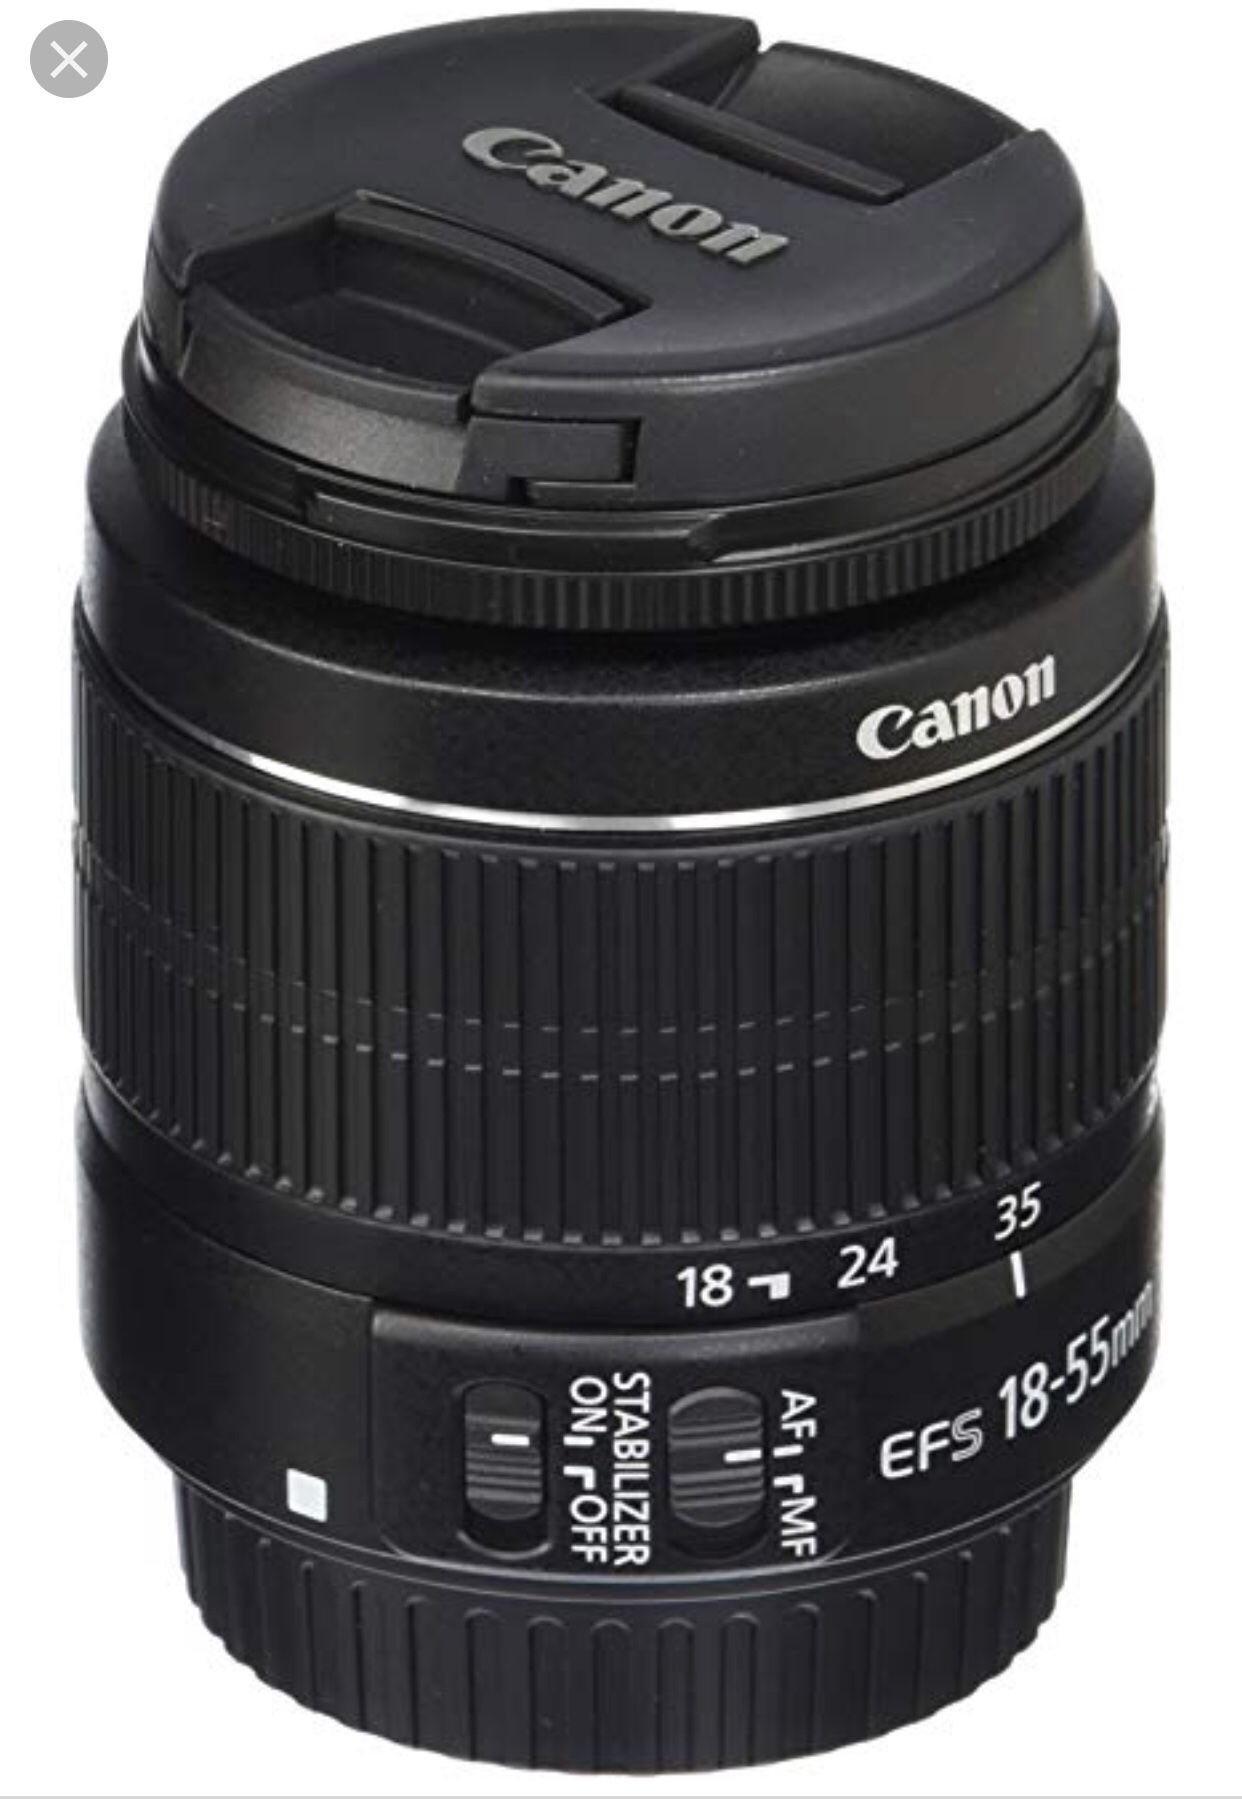 Canon 18-55mm lense